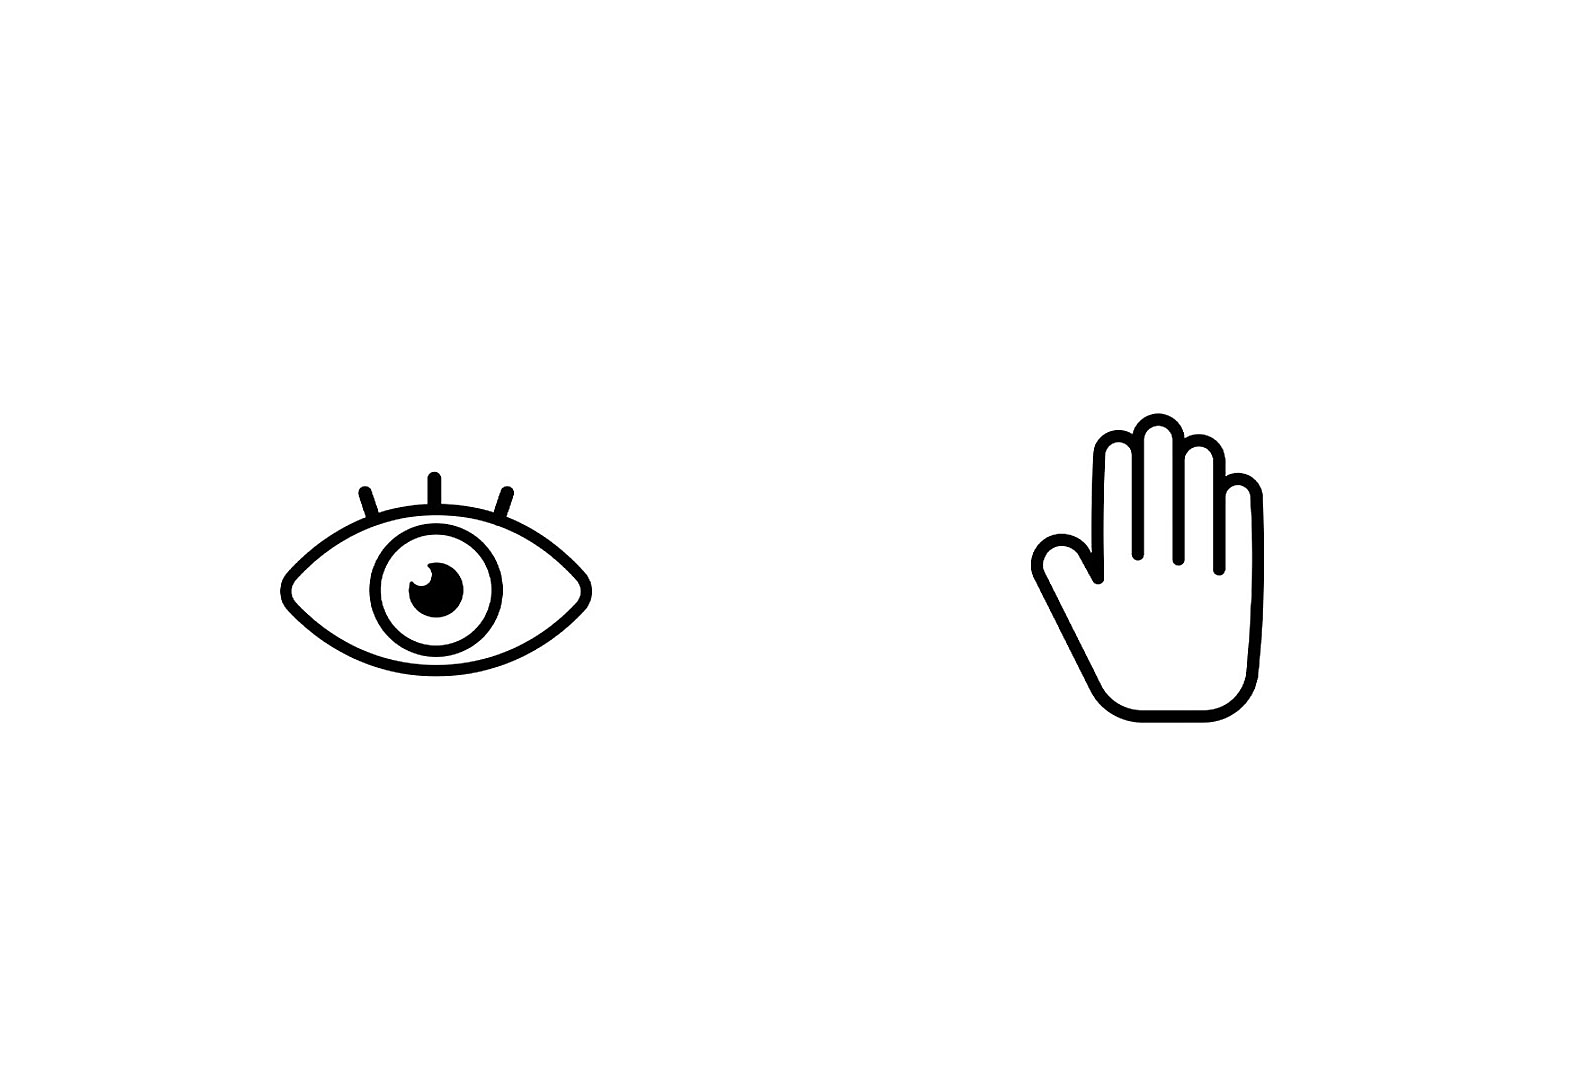 Две иконки една до друга – отляво око, а отдясно ръка